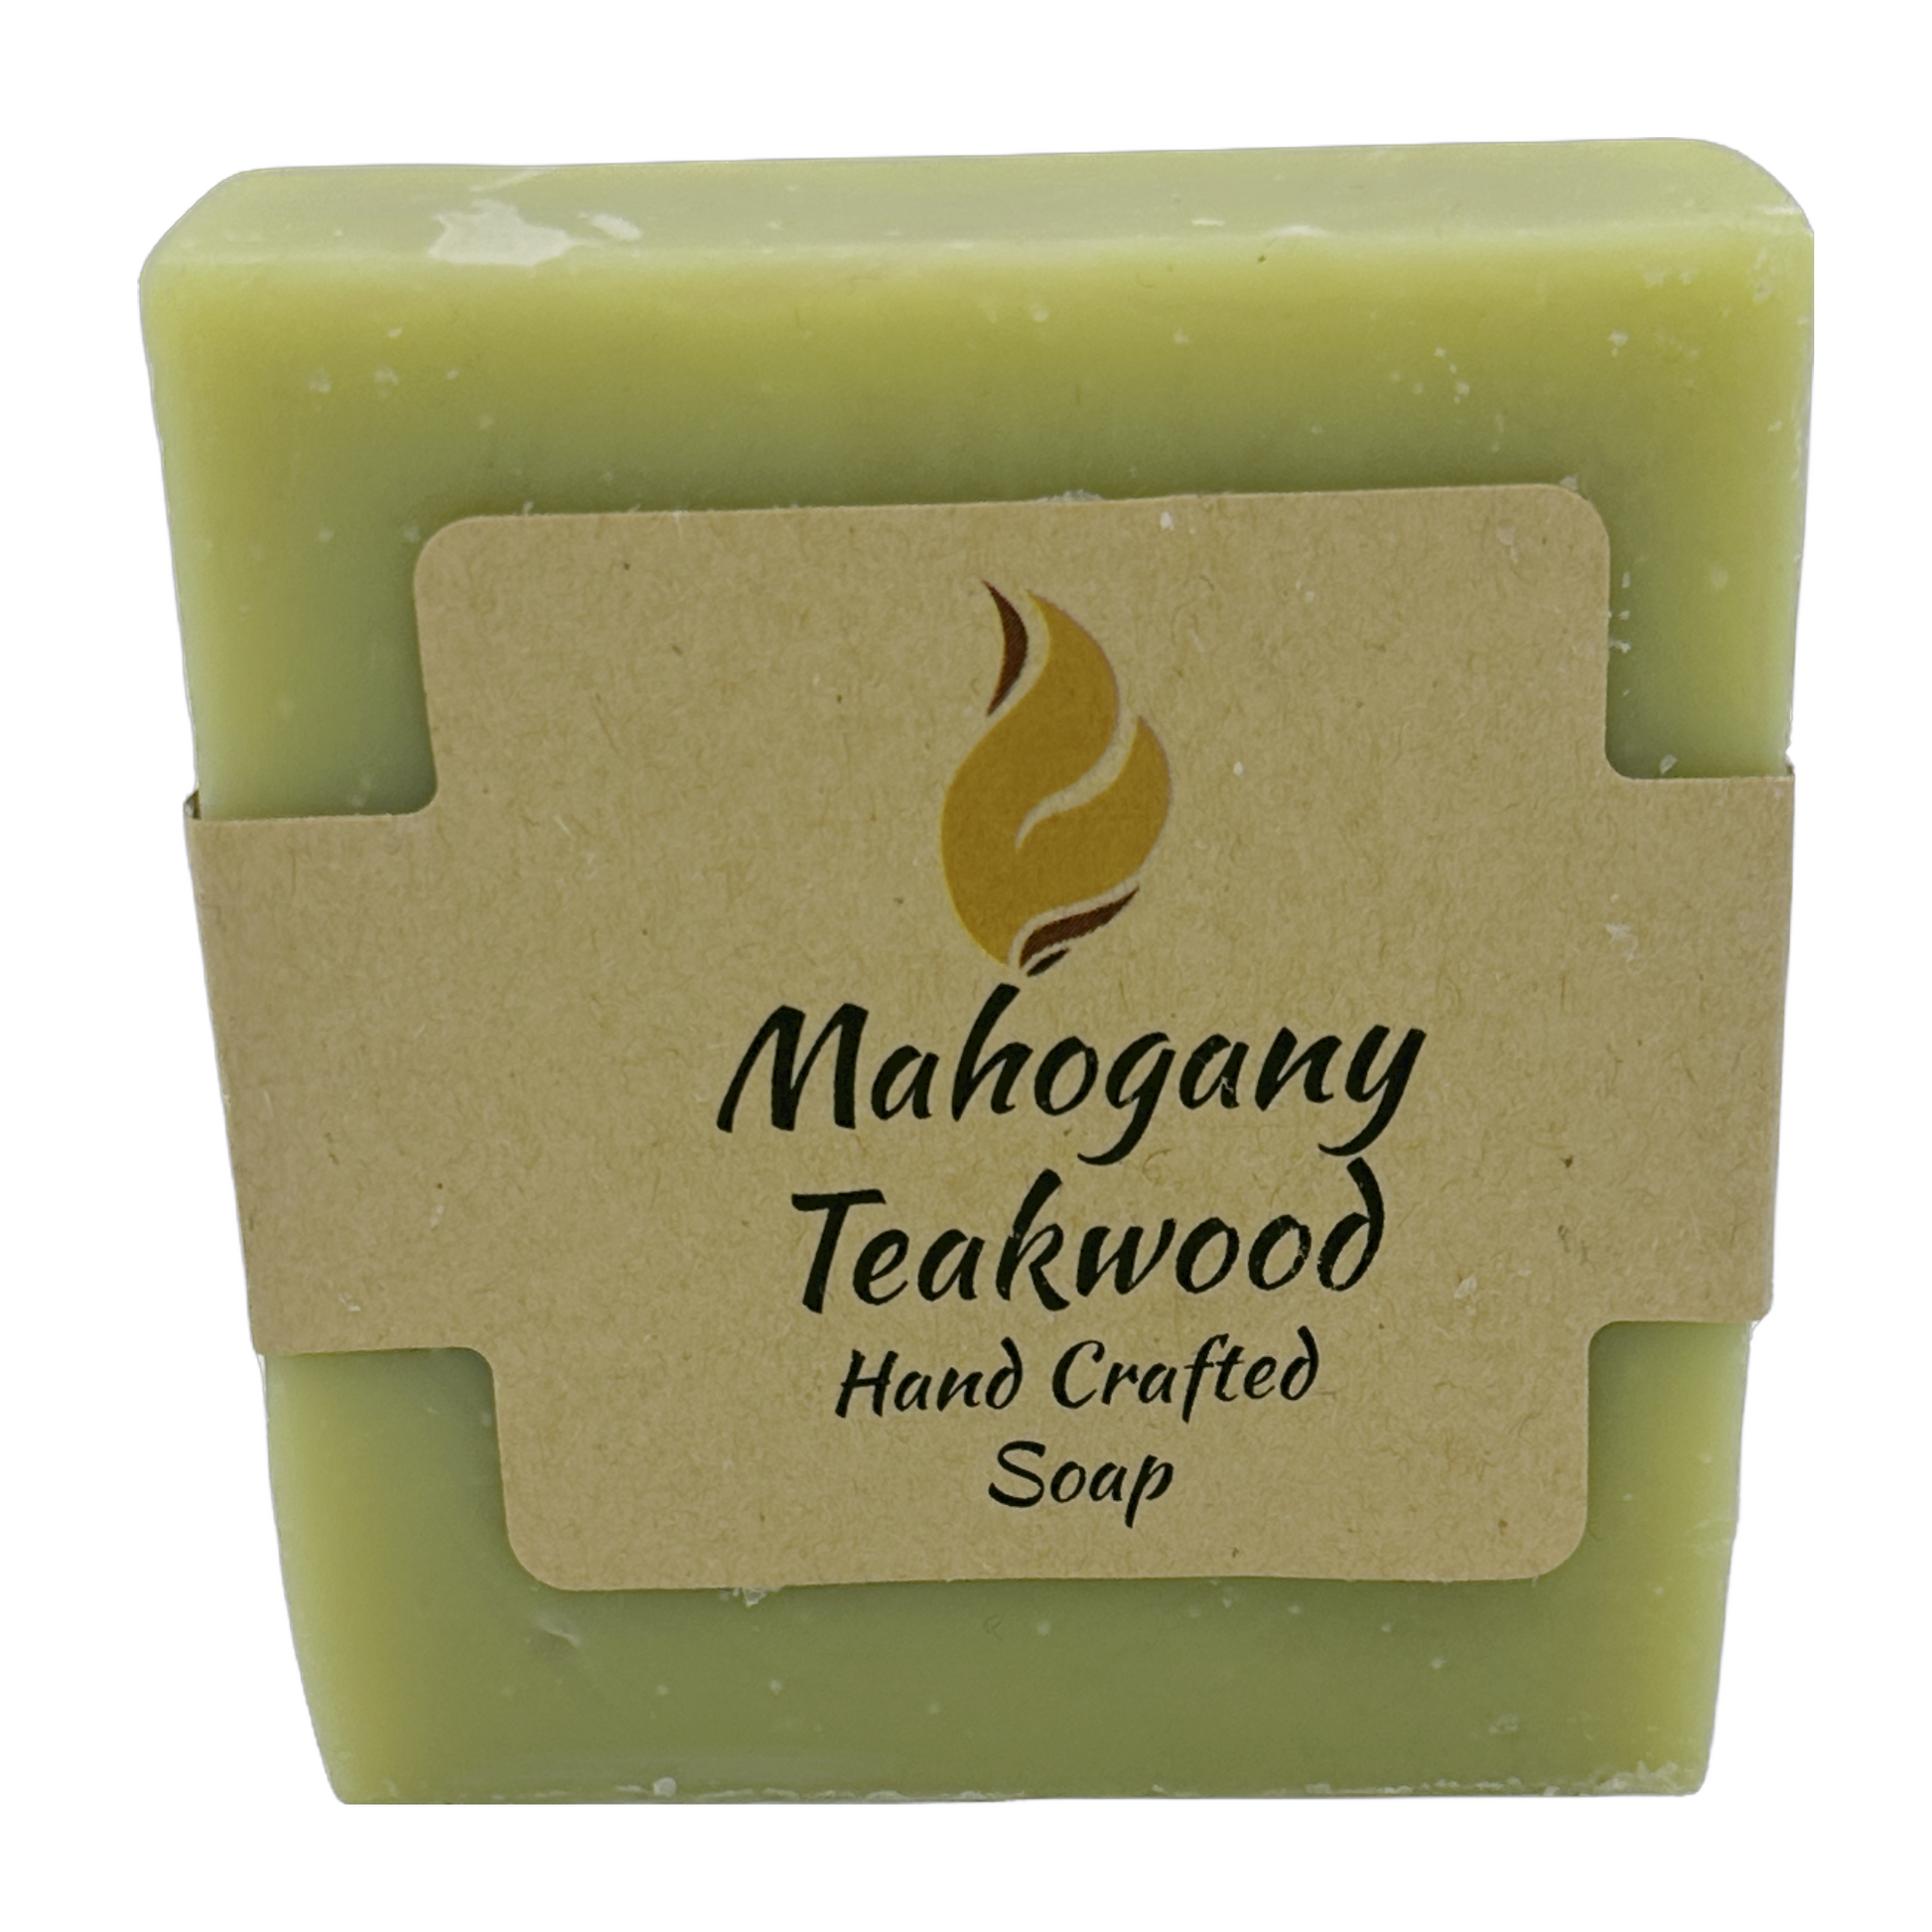 Teakwood & Coconut Shea Butter Soap